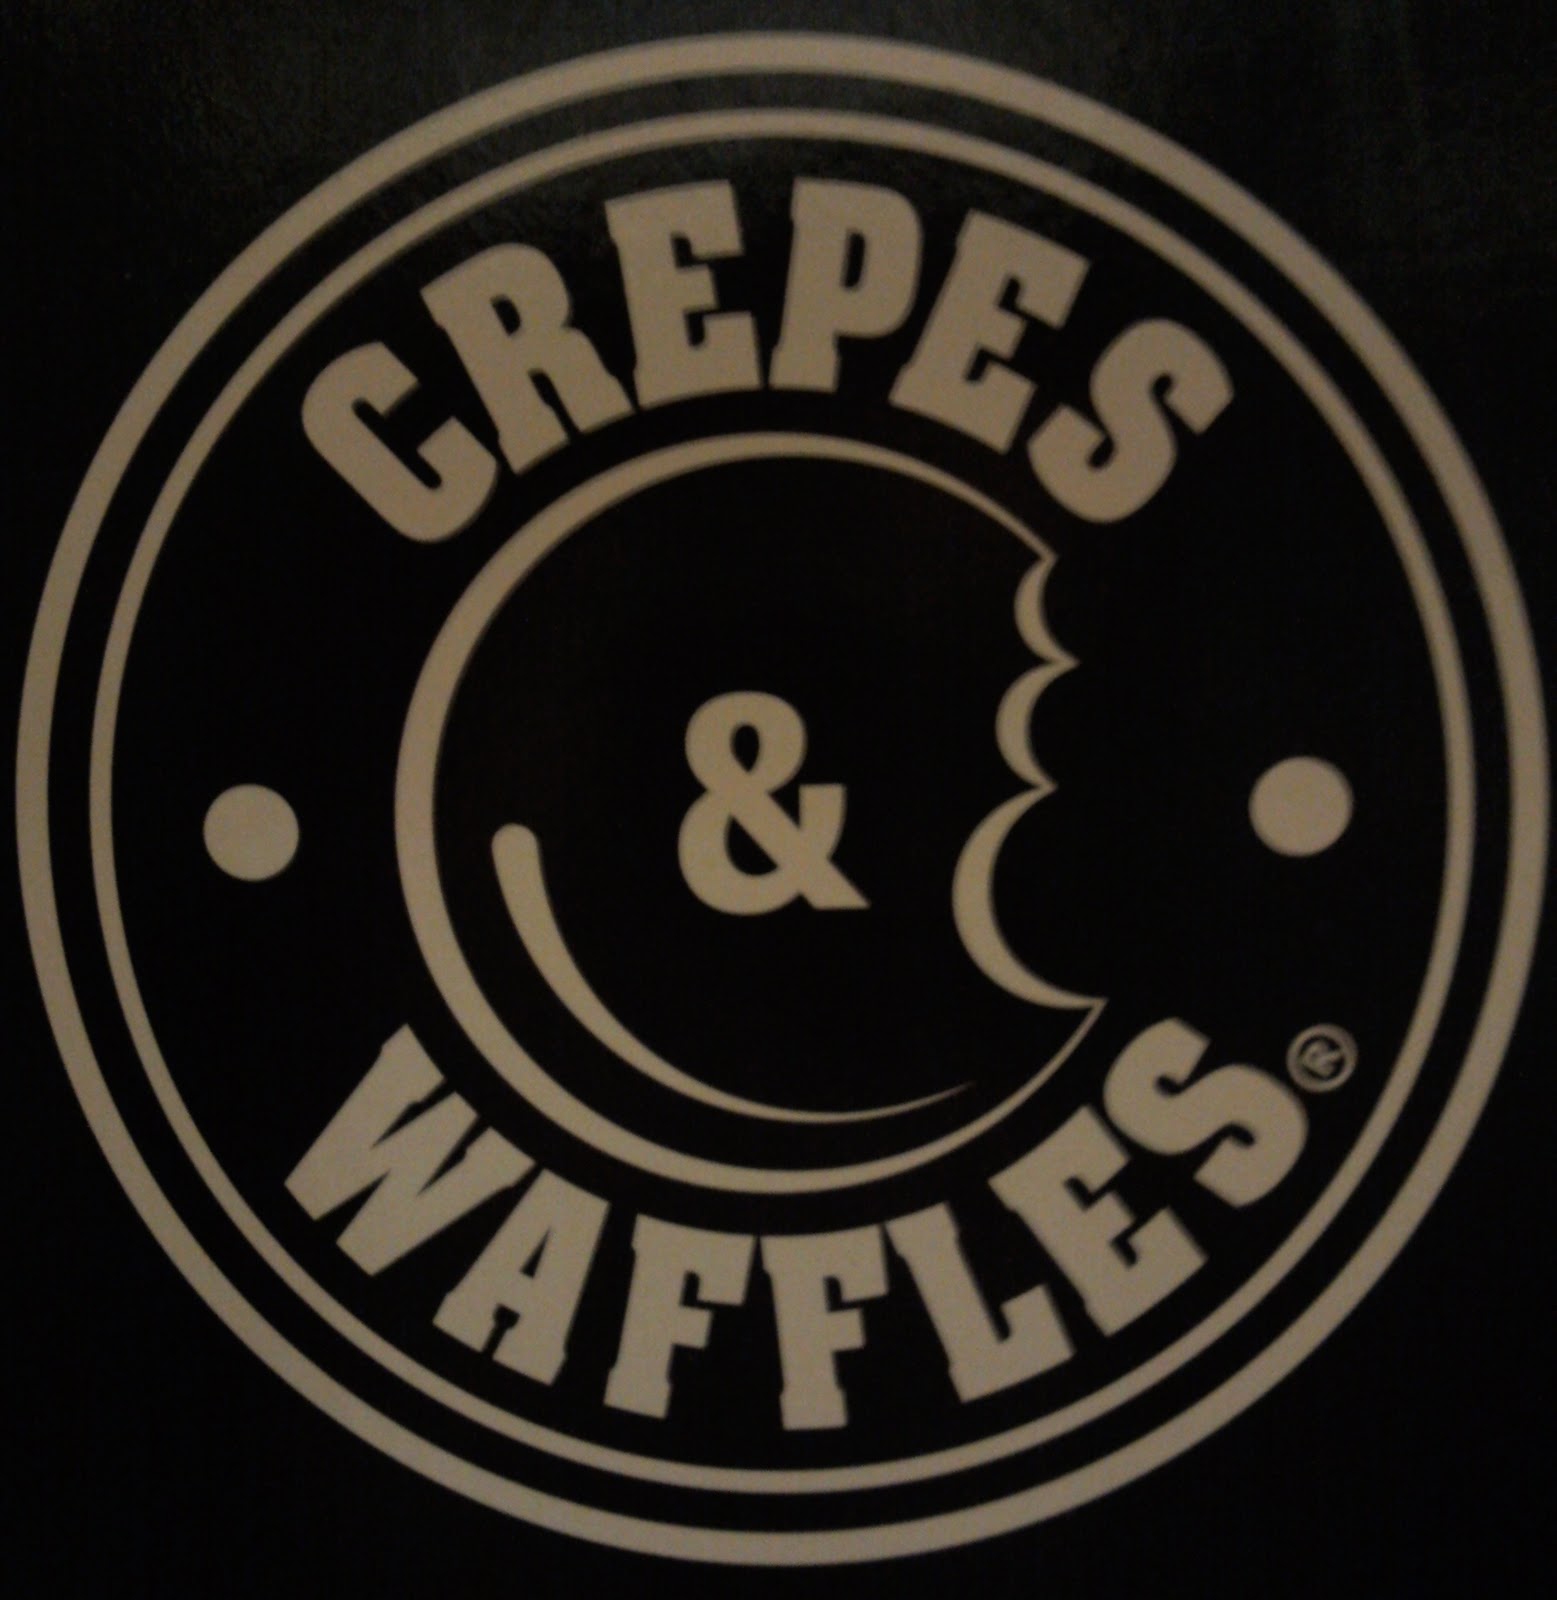 As lograron su xito. La historia de Crepes Waffles Revista PyM